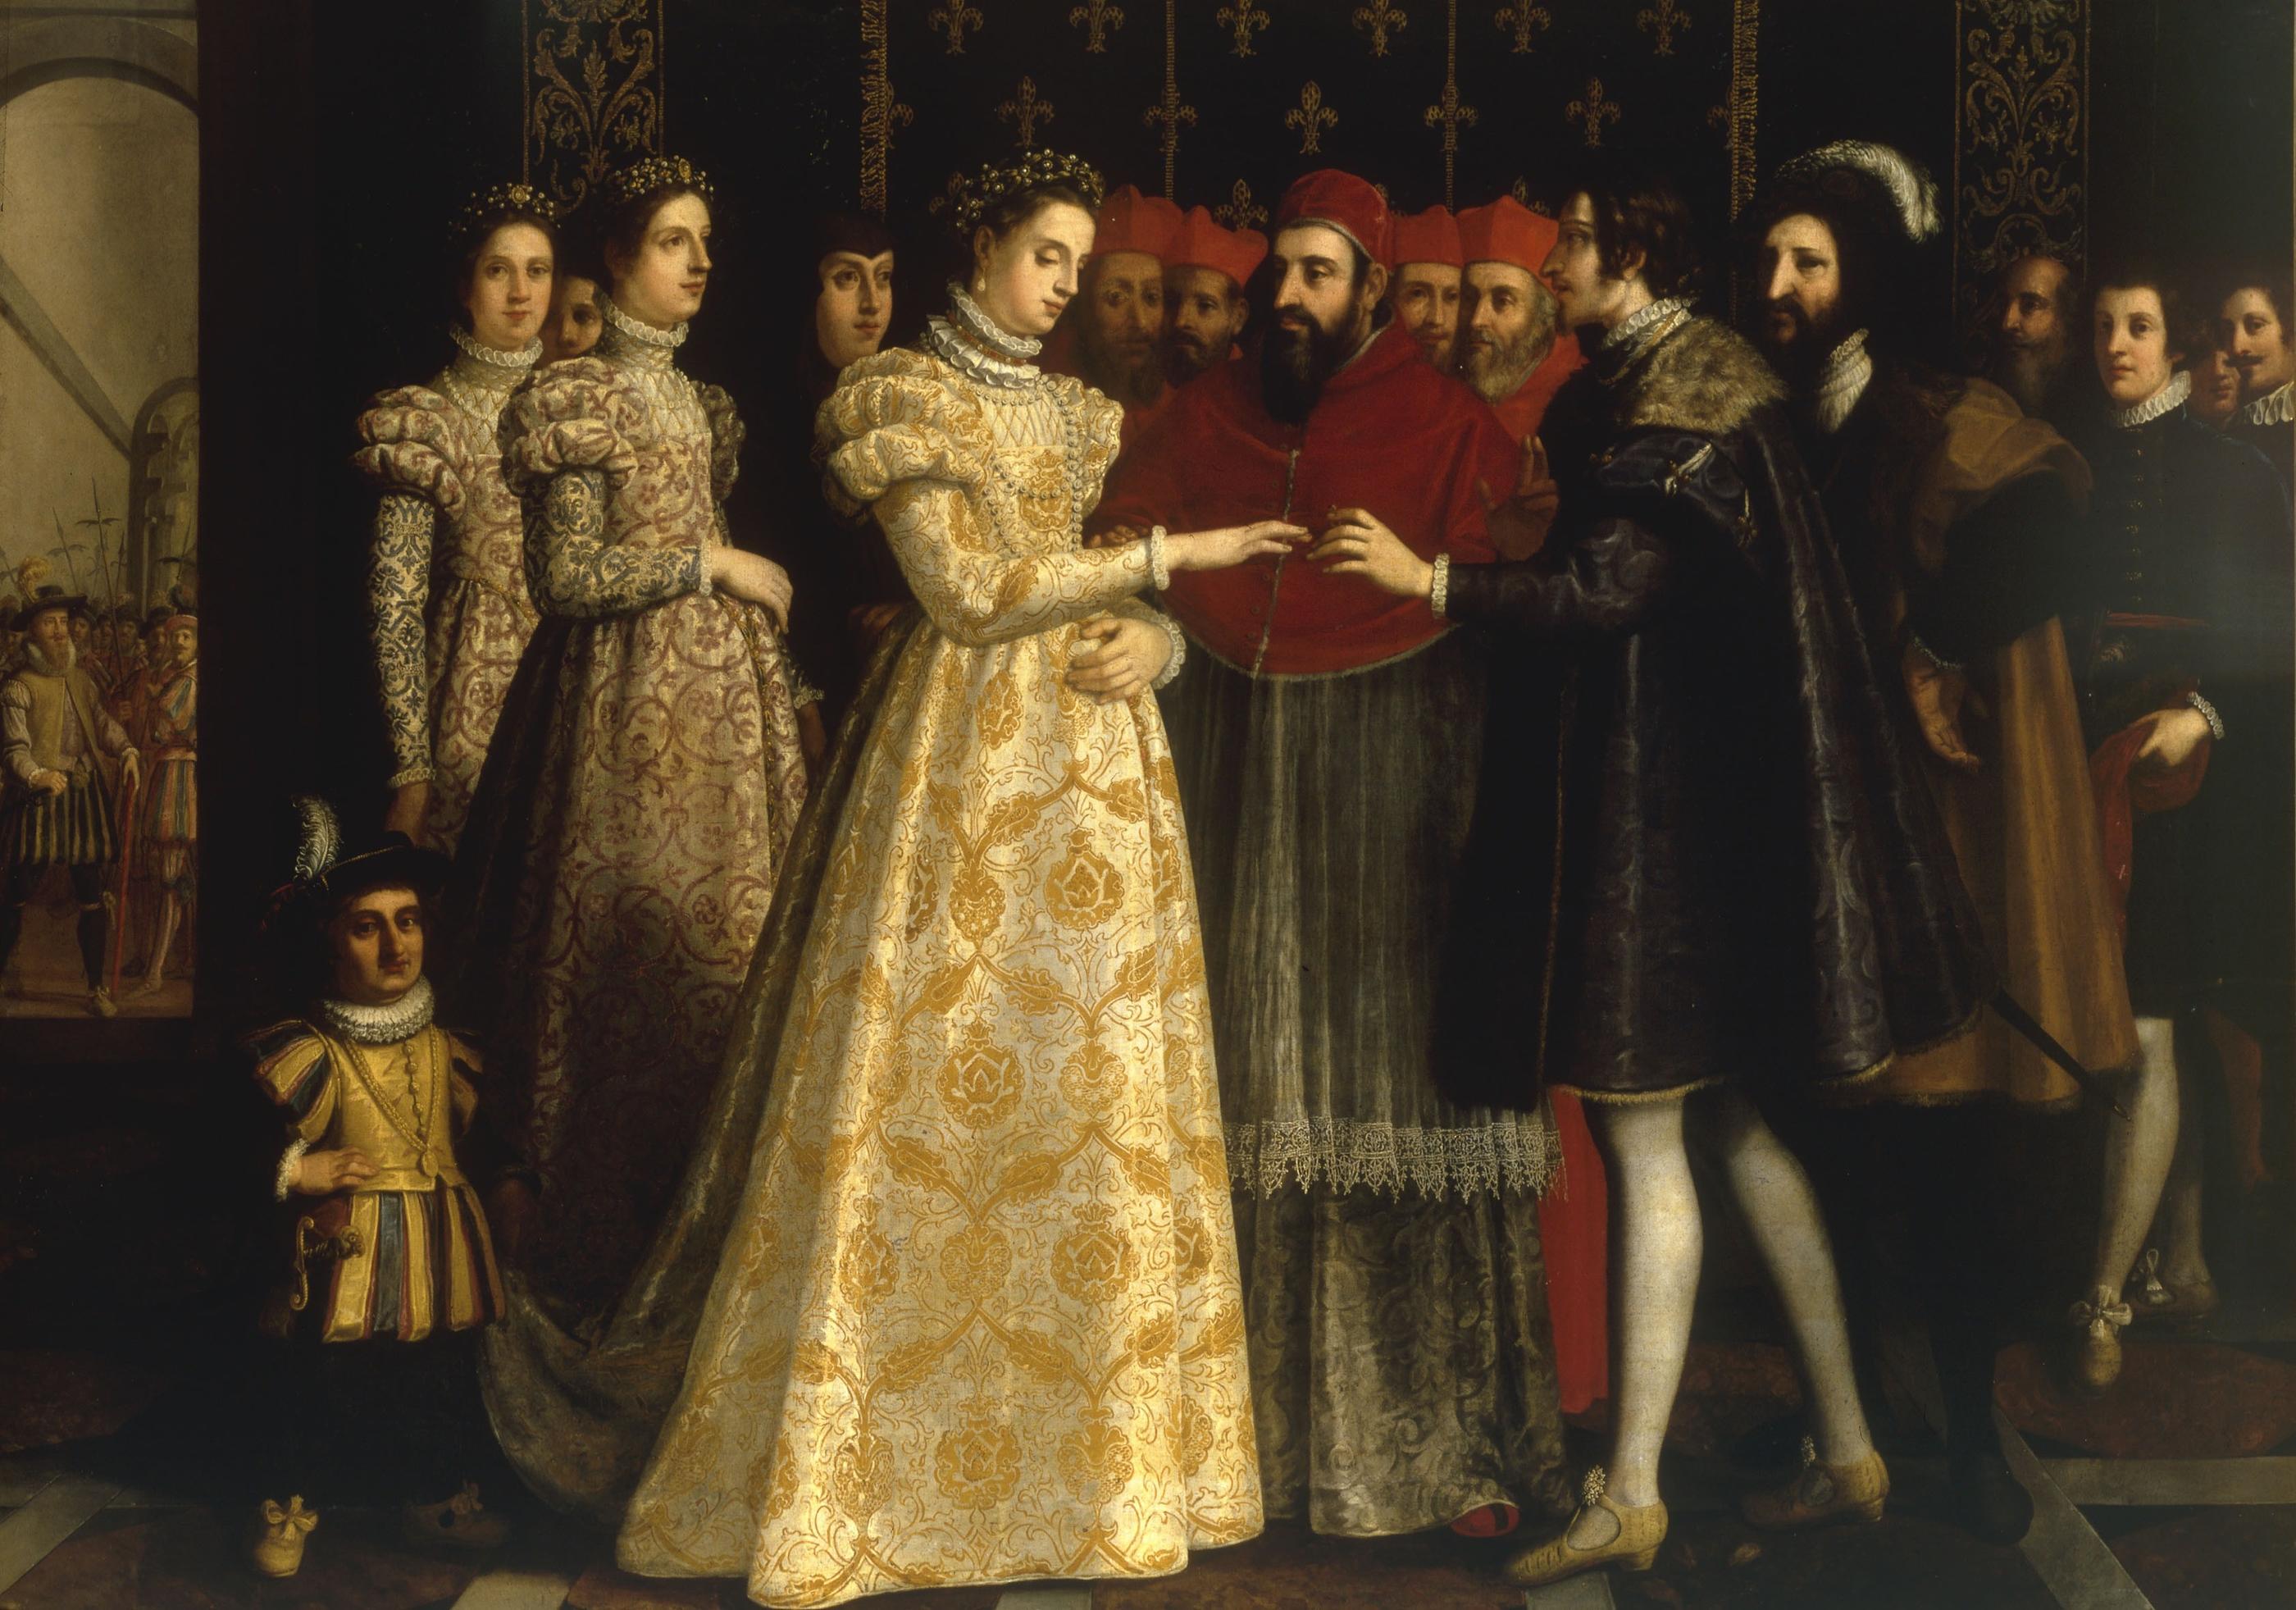 Le mariage de Catherine de Médicis et Henri, duc d'Orléans, 14 ans chacun, a été prononcé par le pape Clément VII le 28 octobre 1533 à Marseille. Huile sur toile, v. 1627, de Francesco Bianchi Bonavita (1603-1658). Sotheby's/akg-images